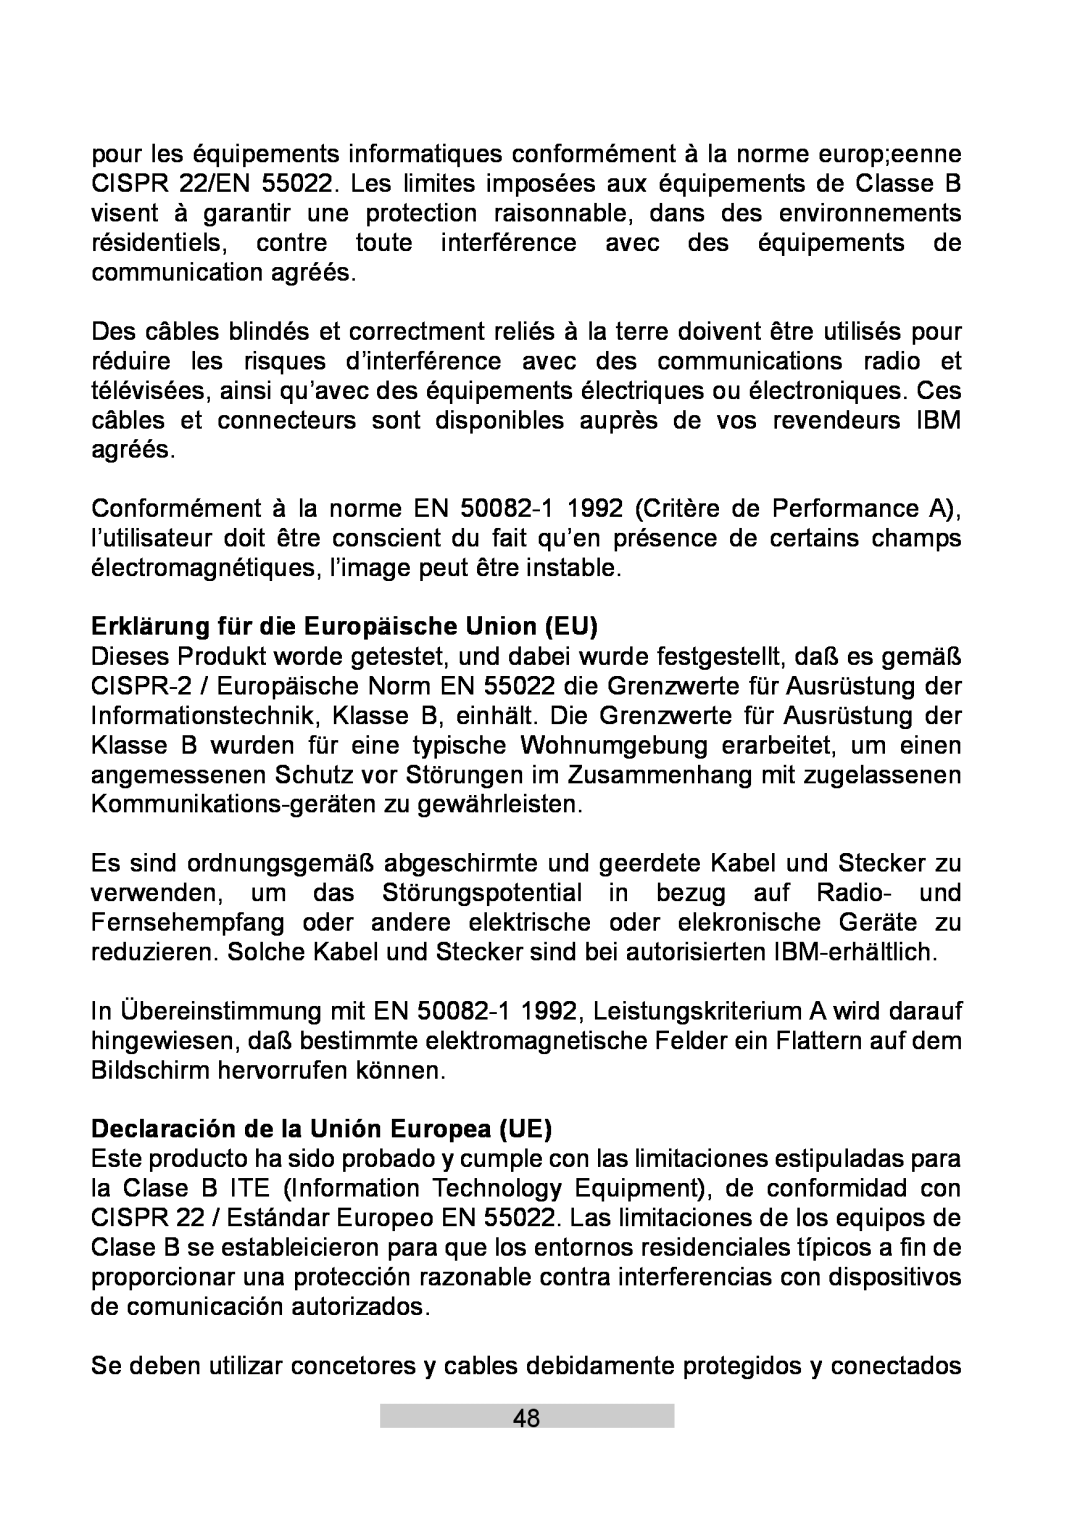 IBM T86A system manual Erklärung für die Europäische Union EU, Declaración de la Unión Europea UE 